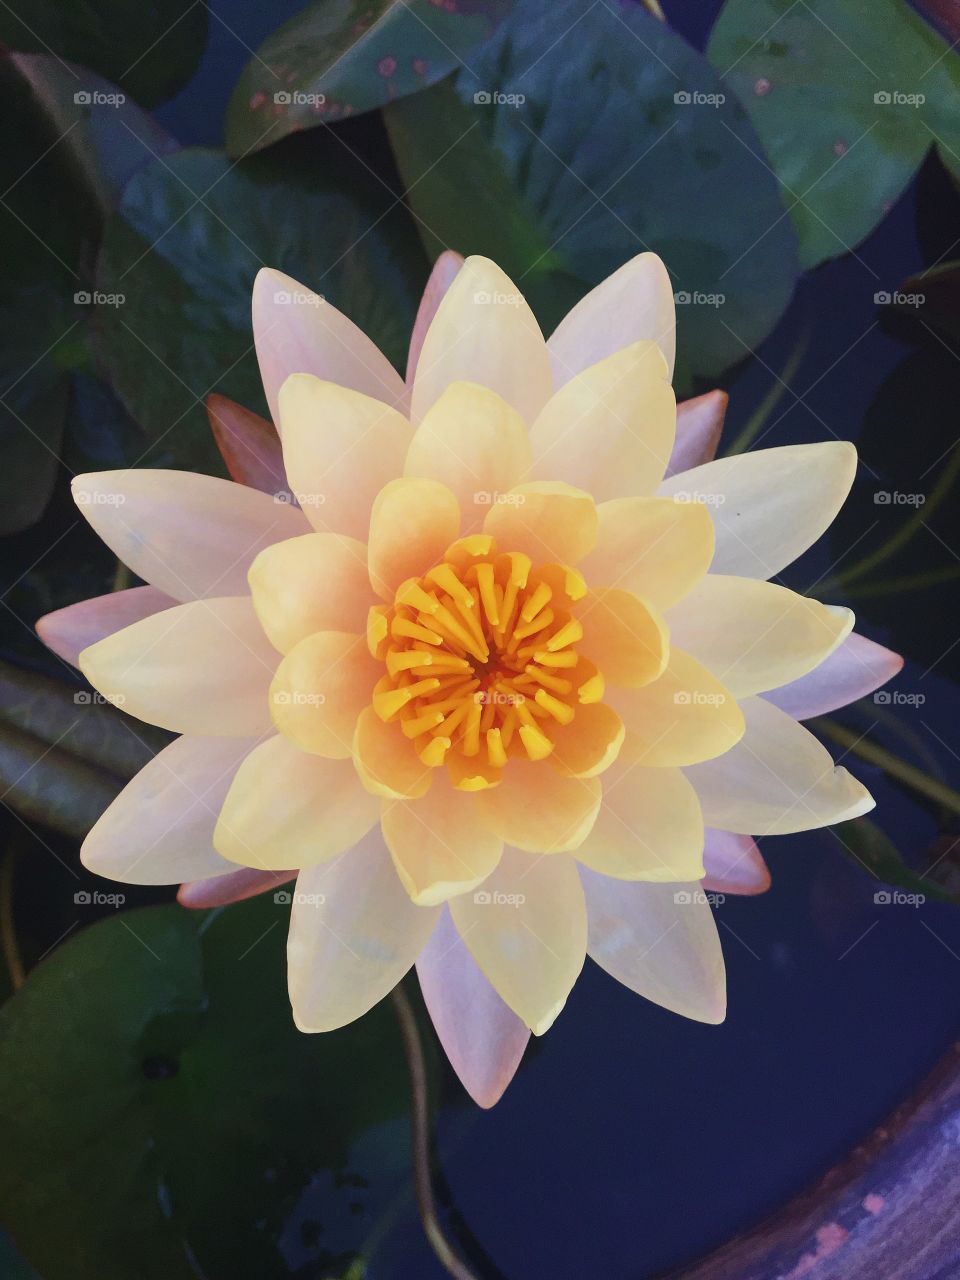 Lotus. Queen of water
